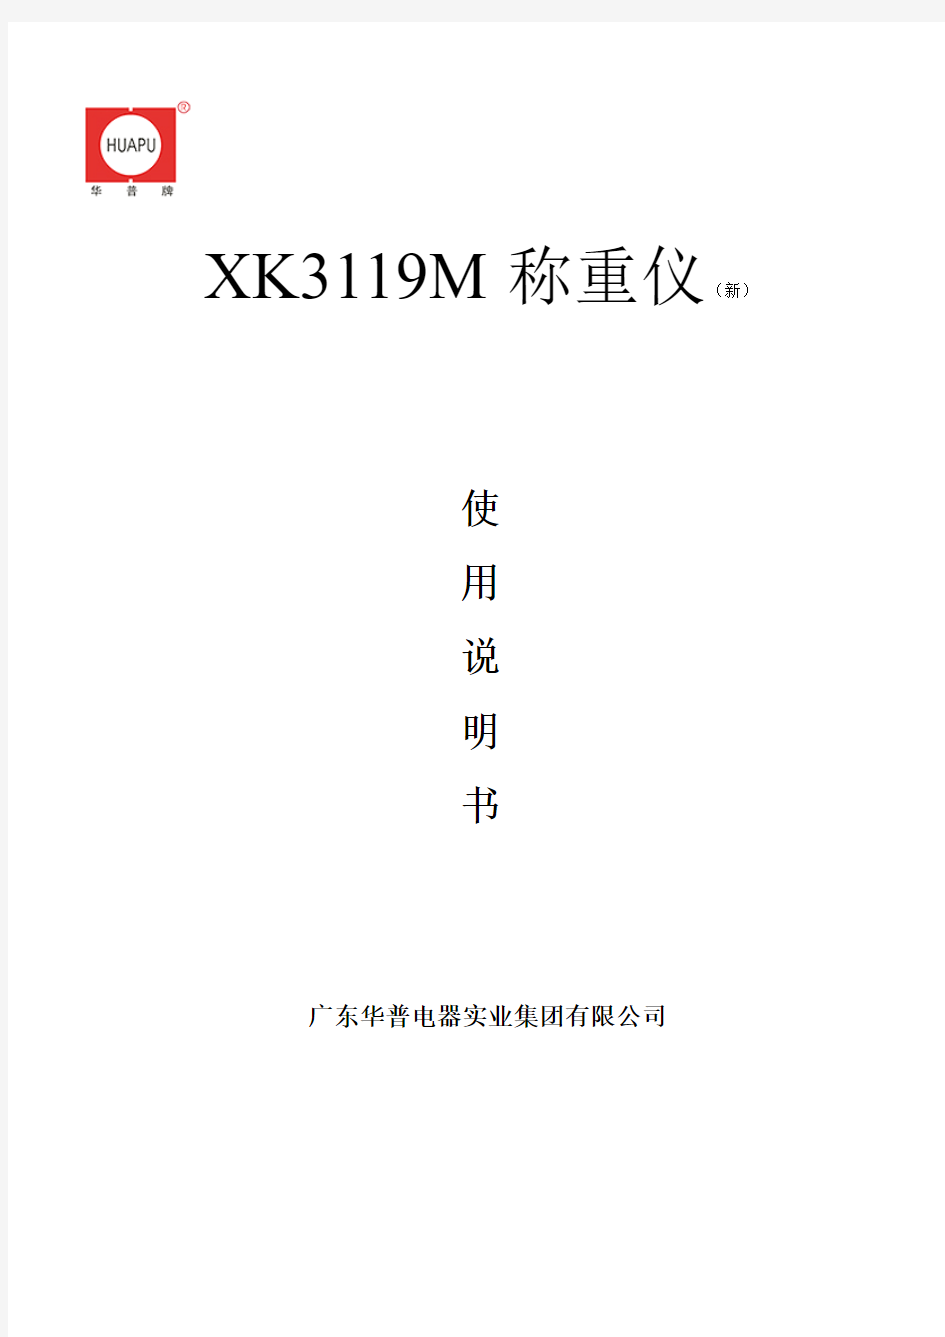 XK3119M称重仪(新)